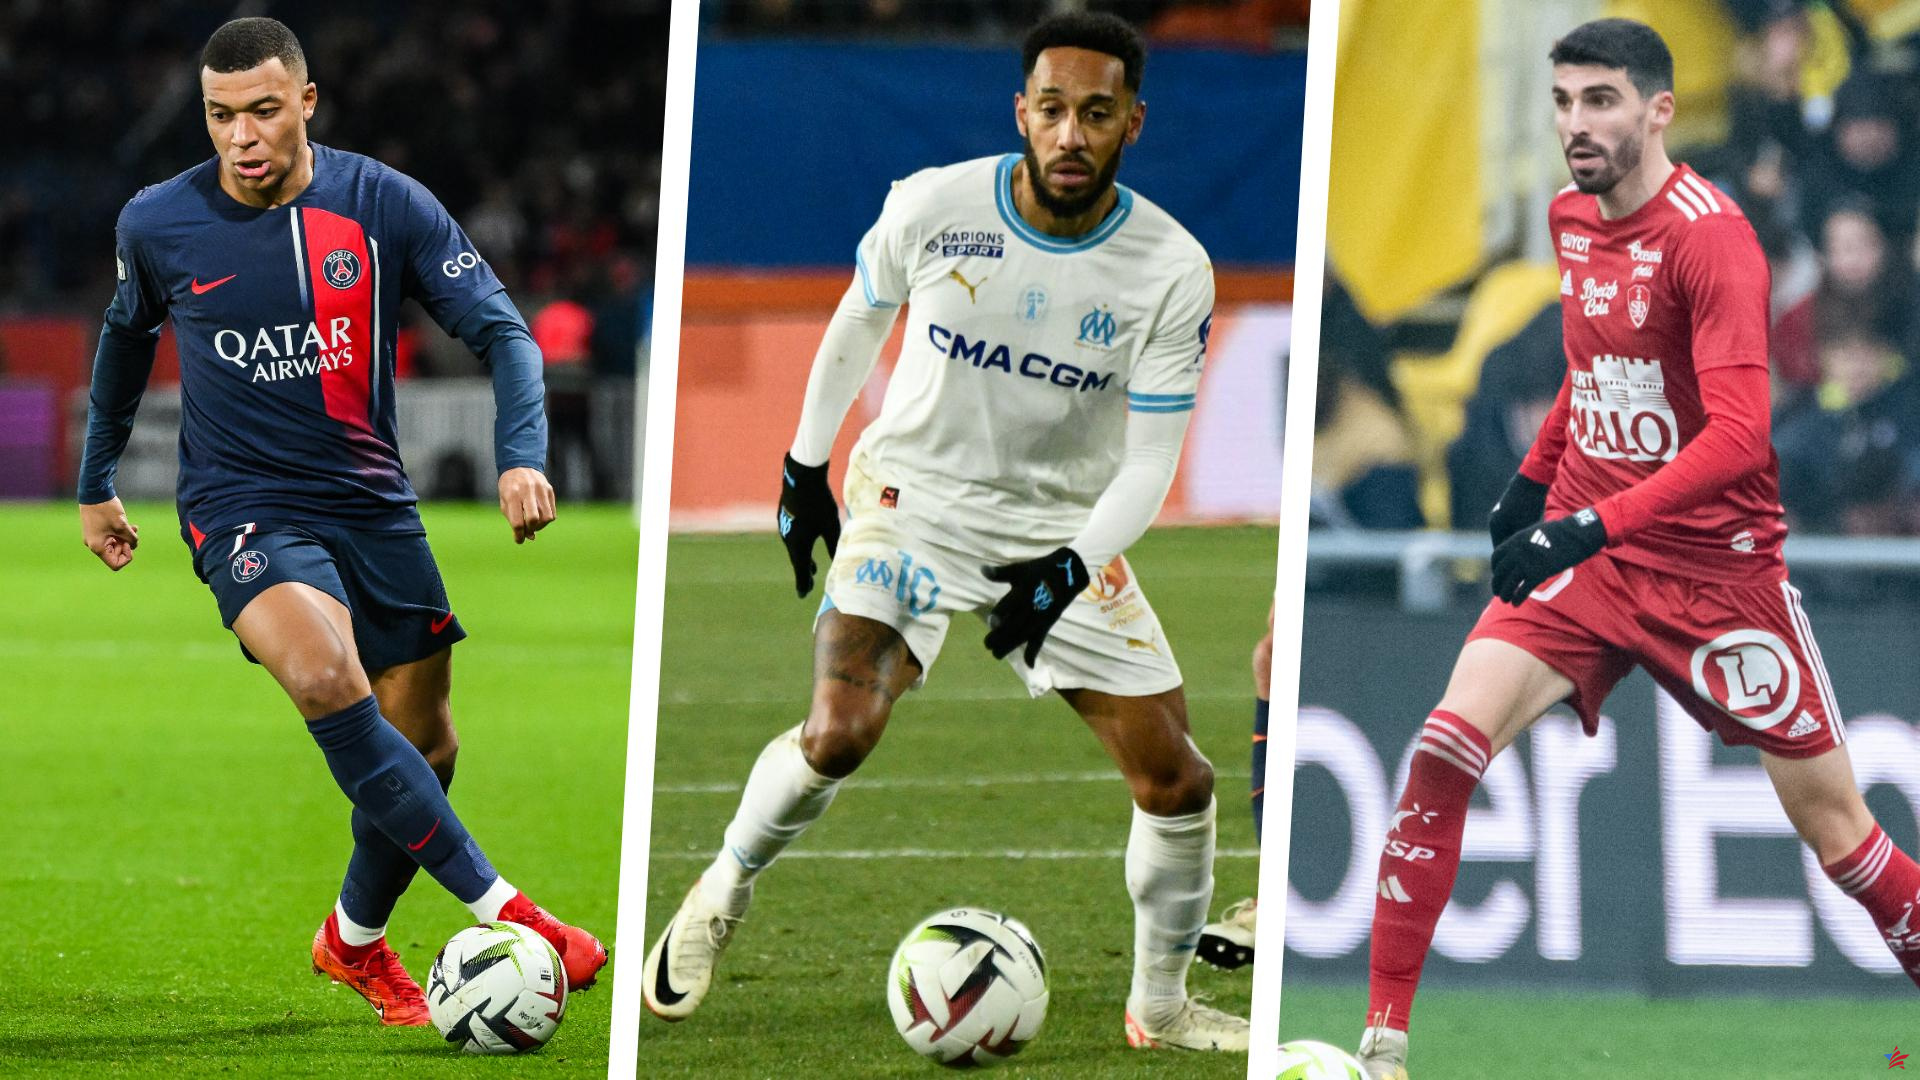 Lens-PSG, Mbappé, la sorpresa del Brest, OM... Ocho preguntas sobre la reanudación de la Ligue 1